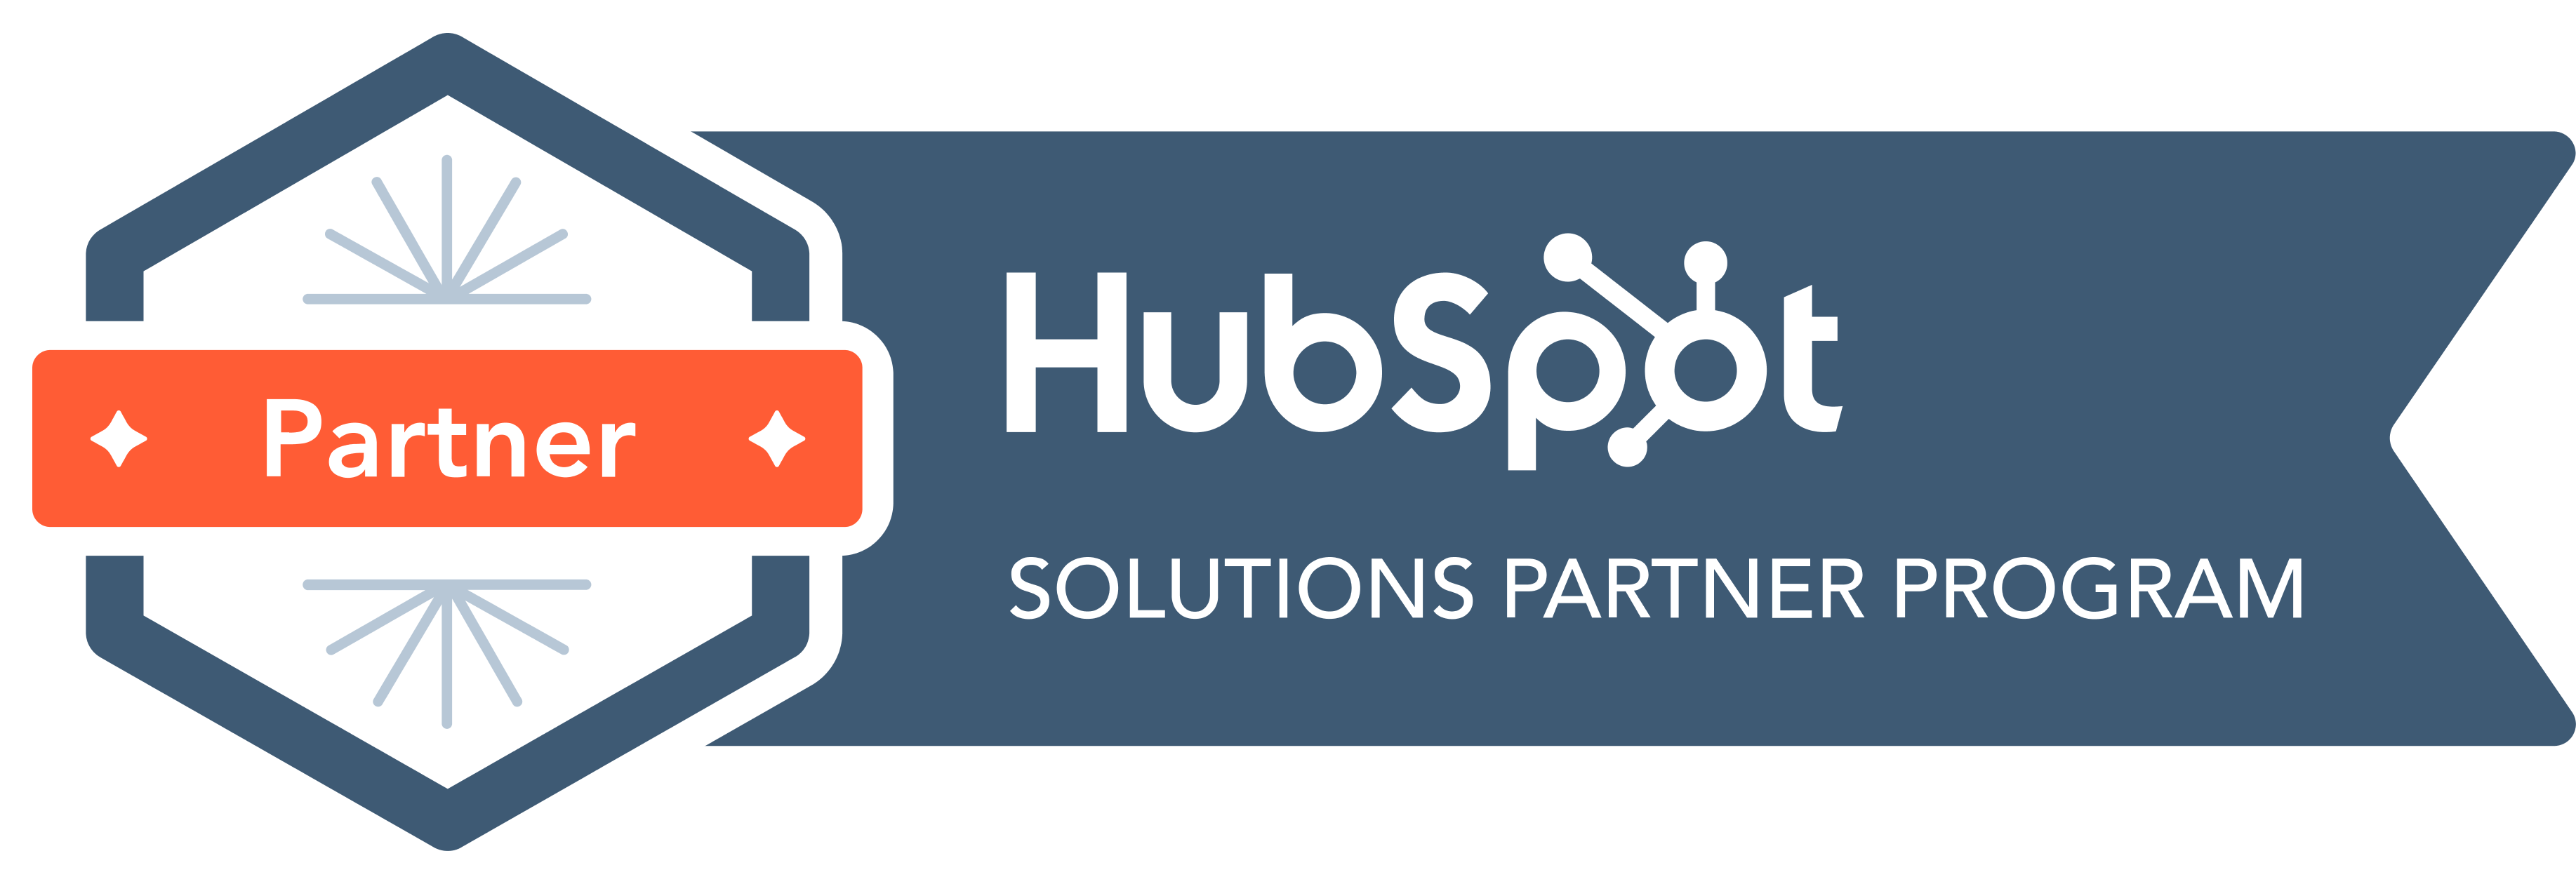 HubSpor Technology Partner Logo